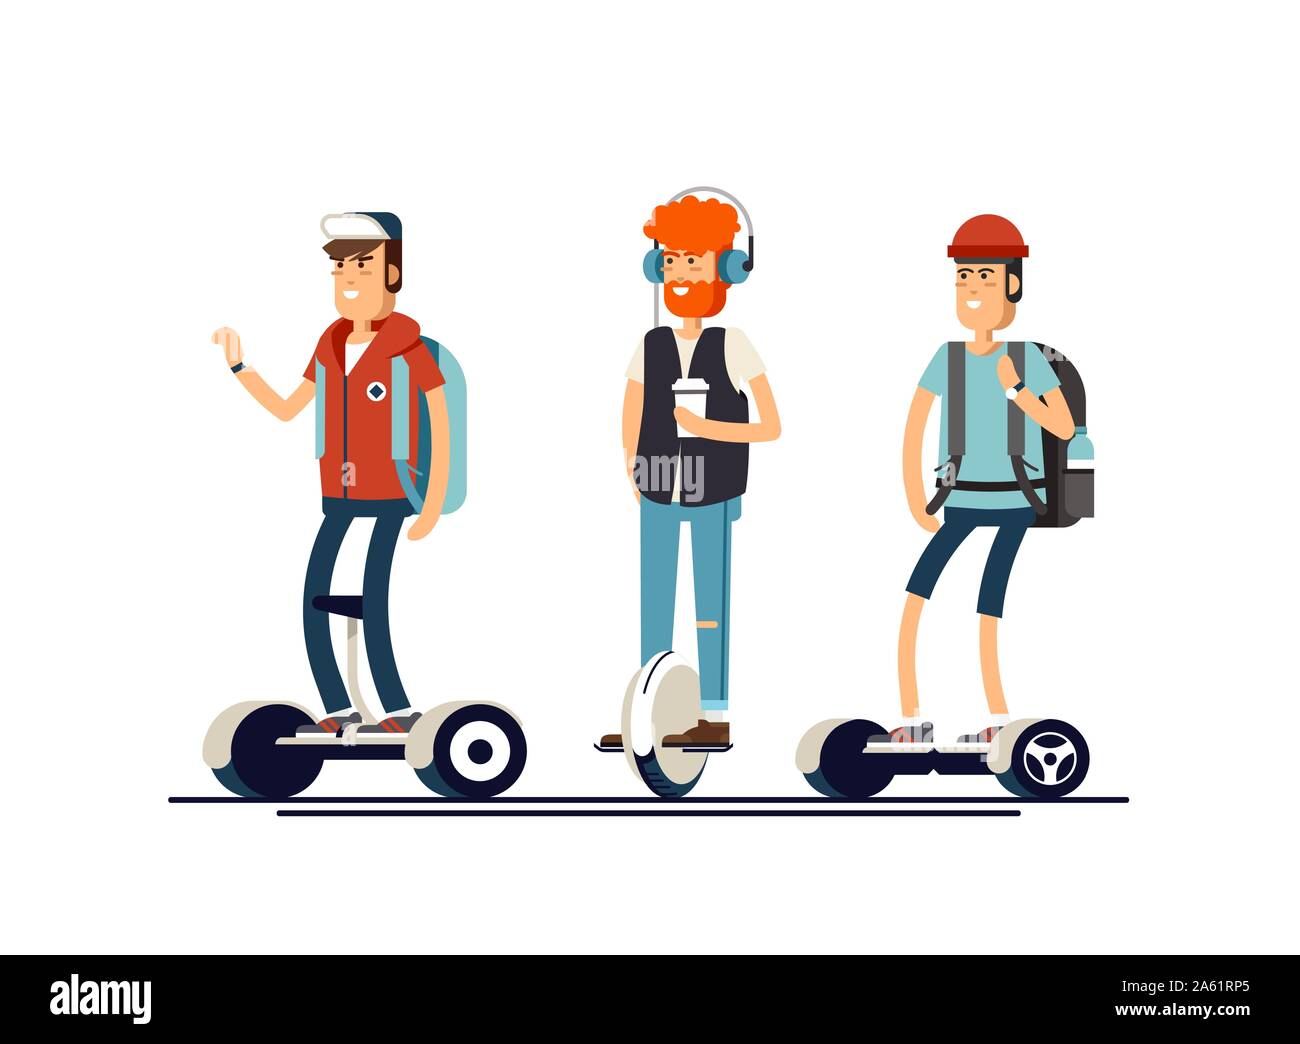 Conjunto activo de joven con scooter eléctrico en nueva tecnología moderna hoverboard, boy auto rueda de equilibrio gyroscooter transporte paseo de la calle. Vecto Ilustración del Vector